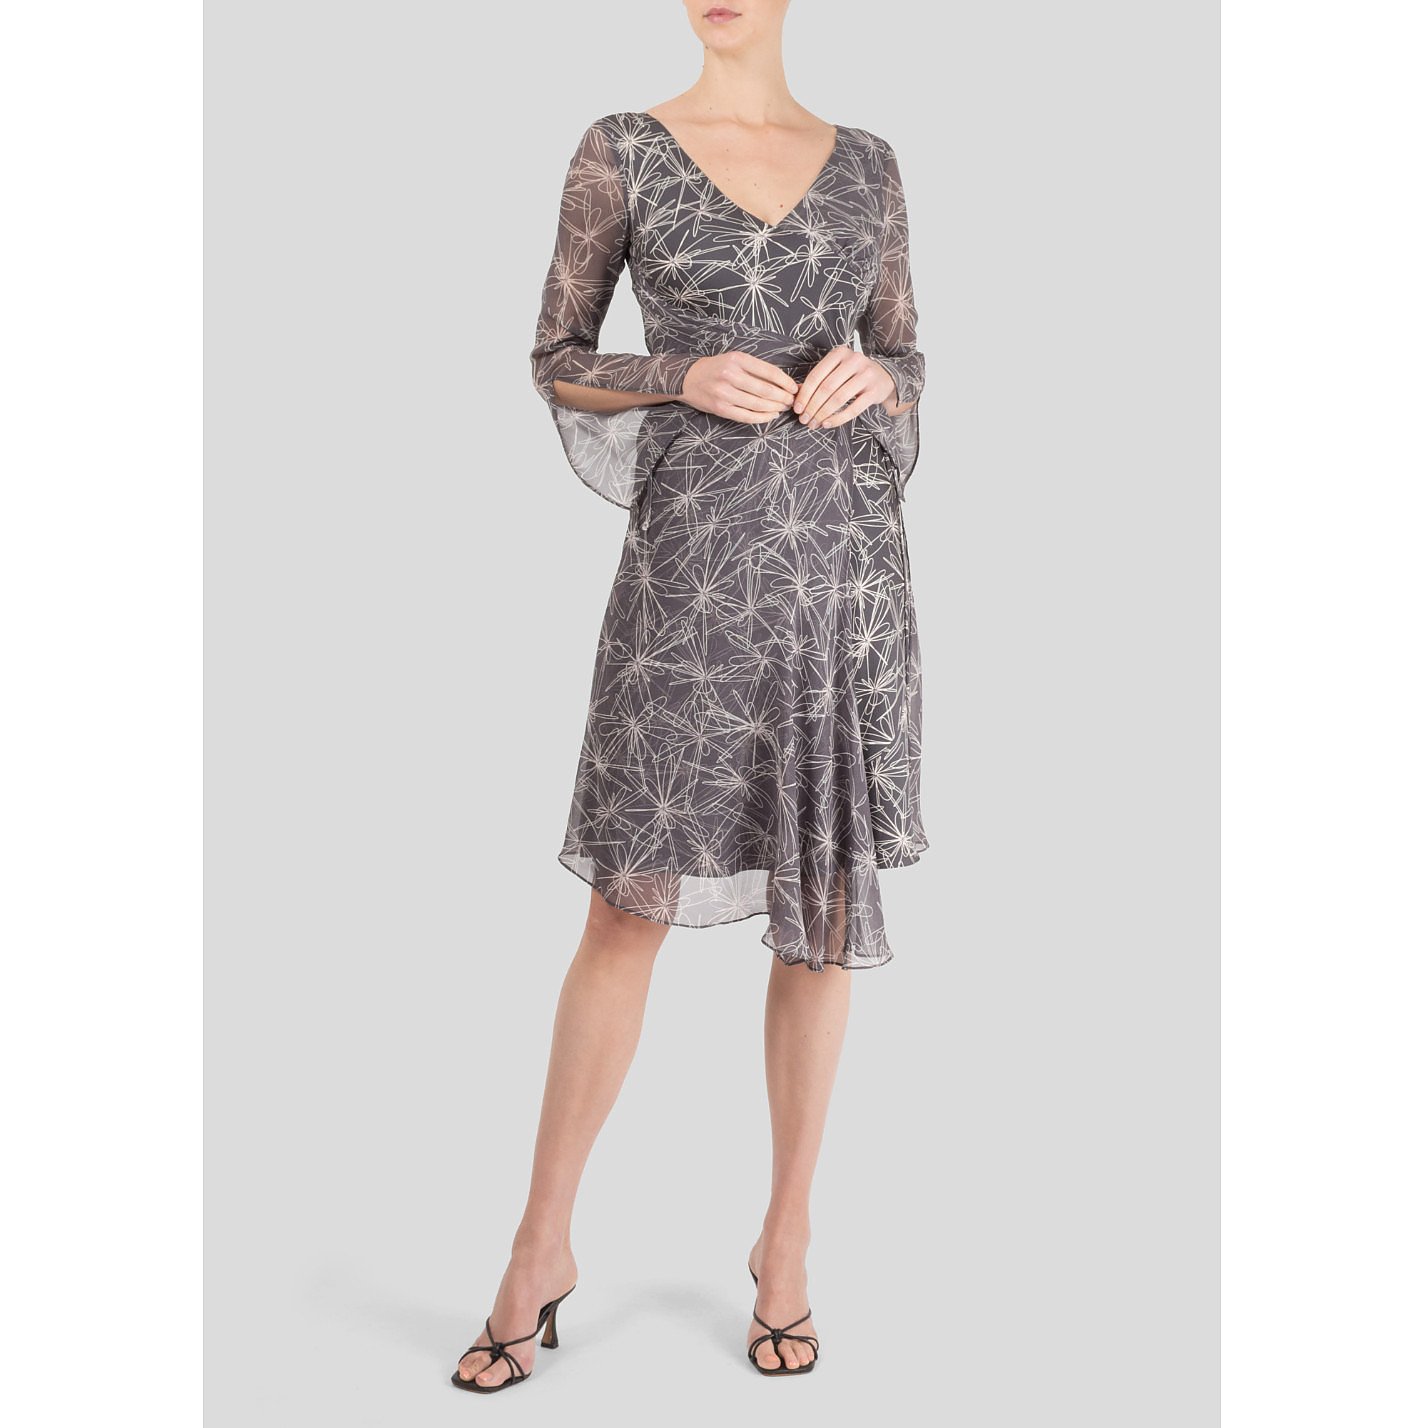 Diane von Furstenberg Printed Silk-Blend Dress